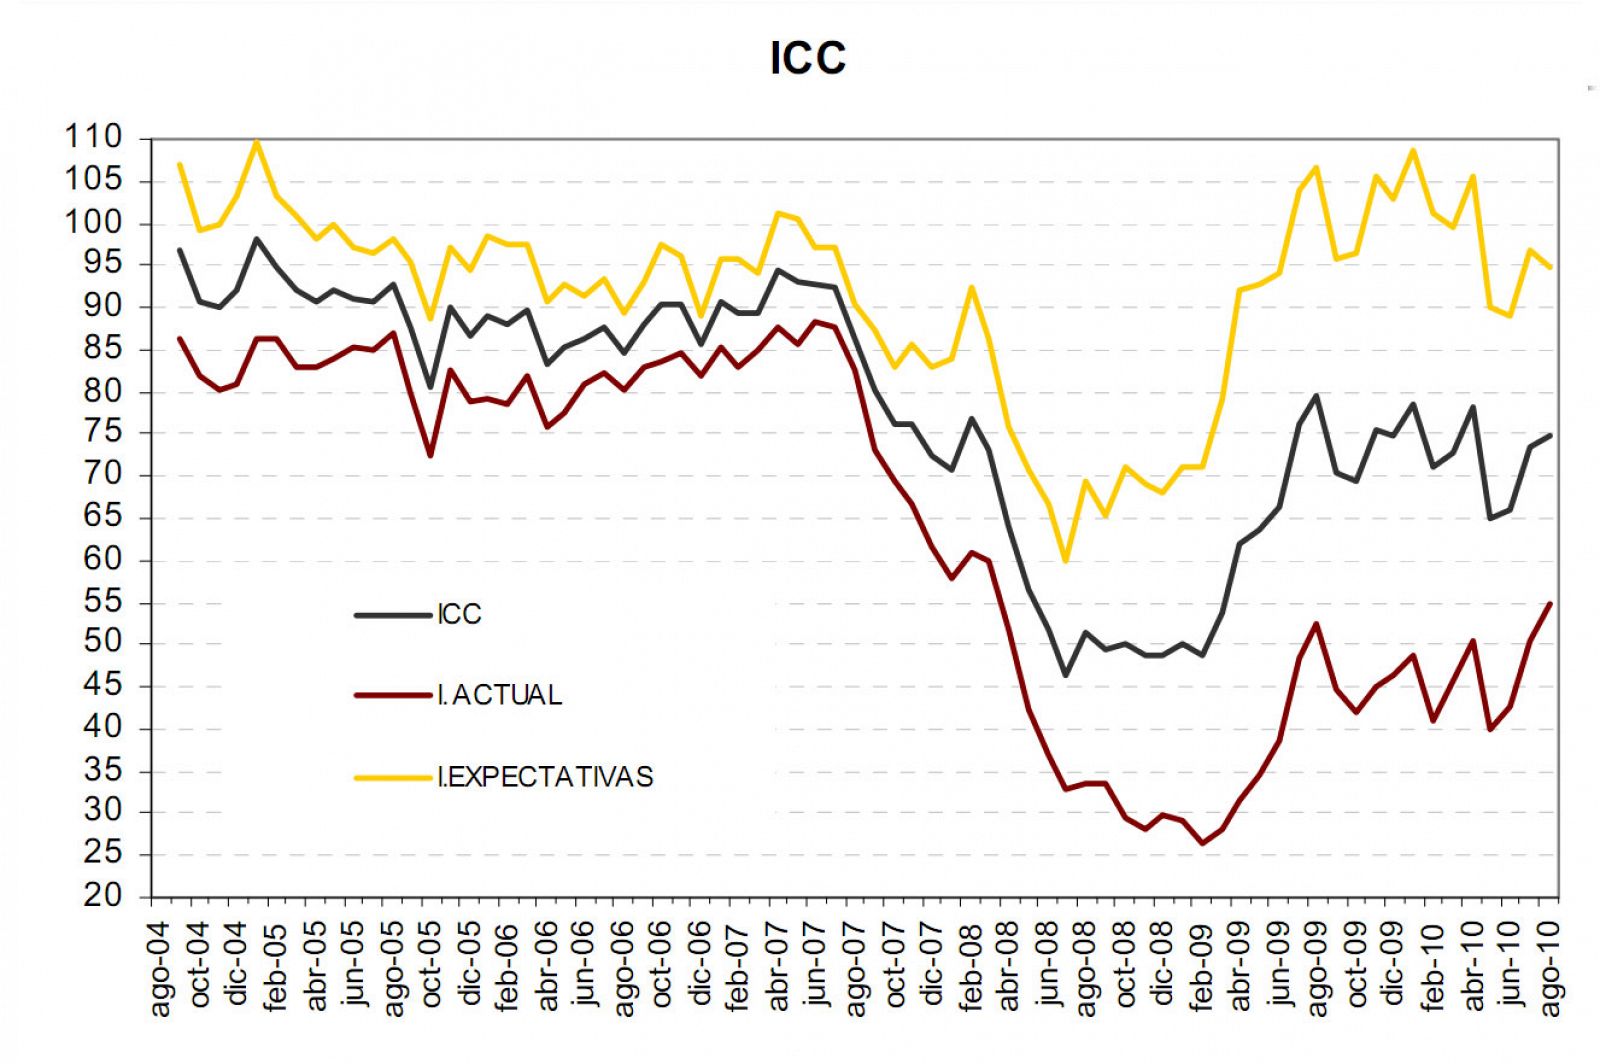 Gráfico de la evolución del ICC (línea oscura) en agosto de 2010